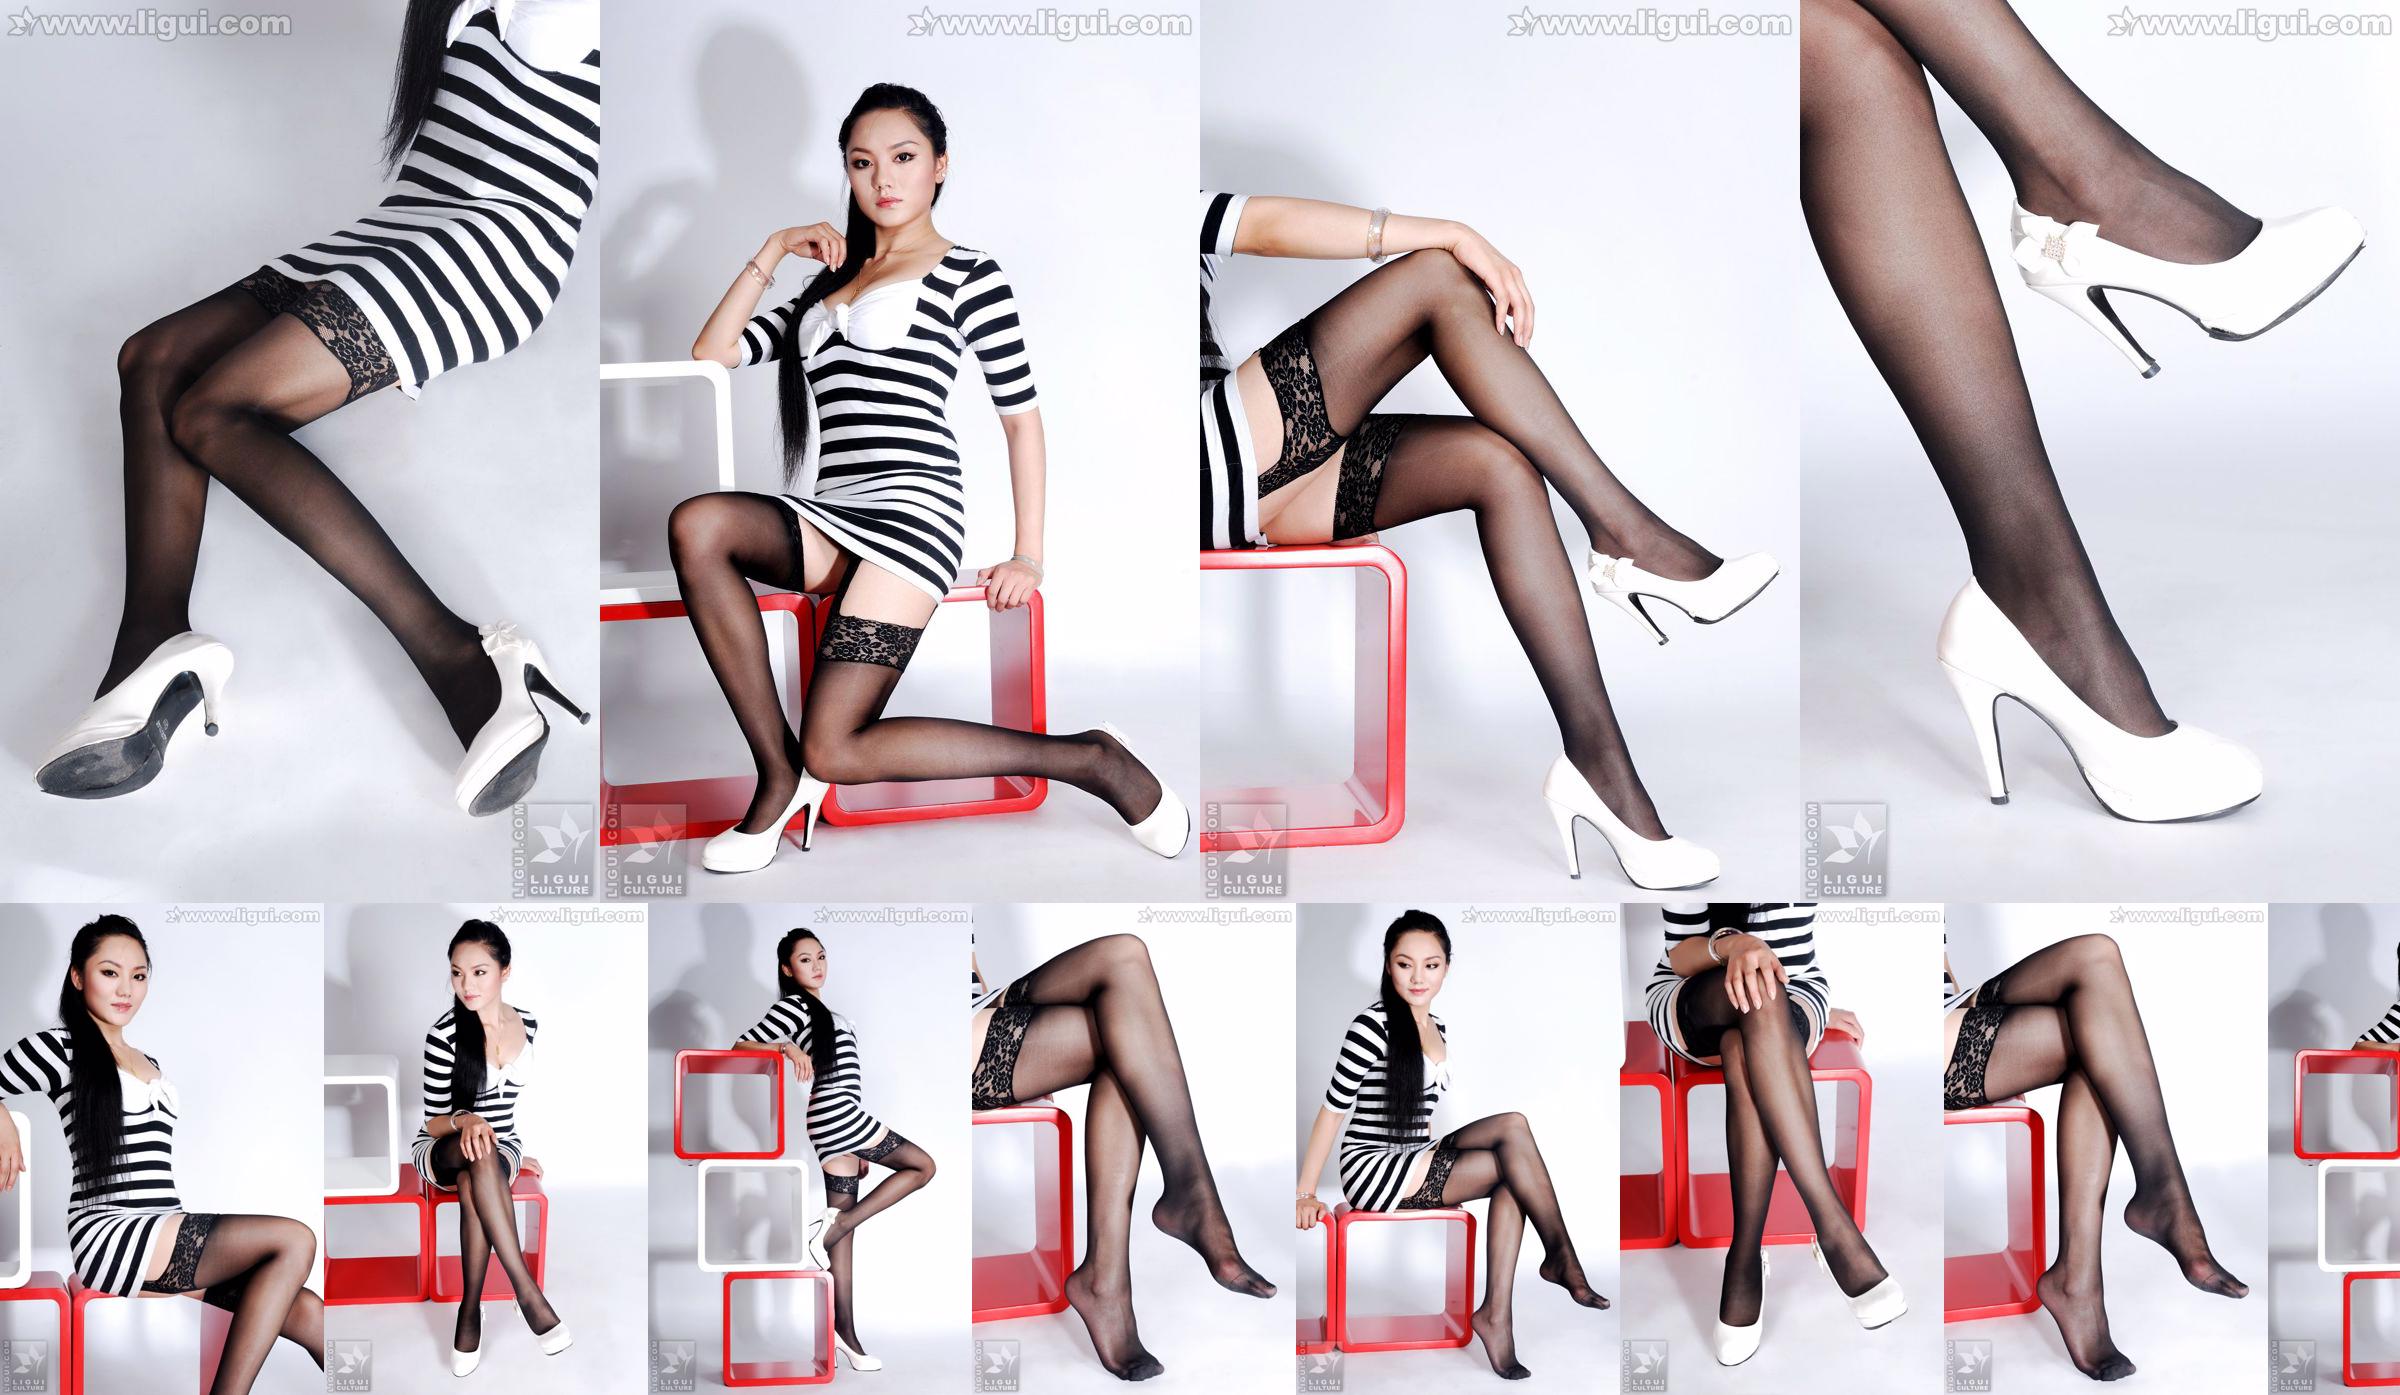 Model Yang Zi "Pesona Stoking dalam Dekorasi Rumah Sederhana" [丽 柜 LiGui] Foto kaki dan kaki giok yang indah No.686bb0 Halaman 10